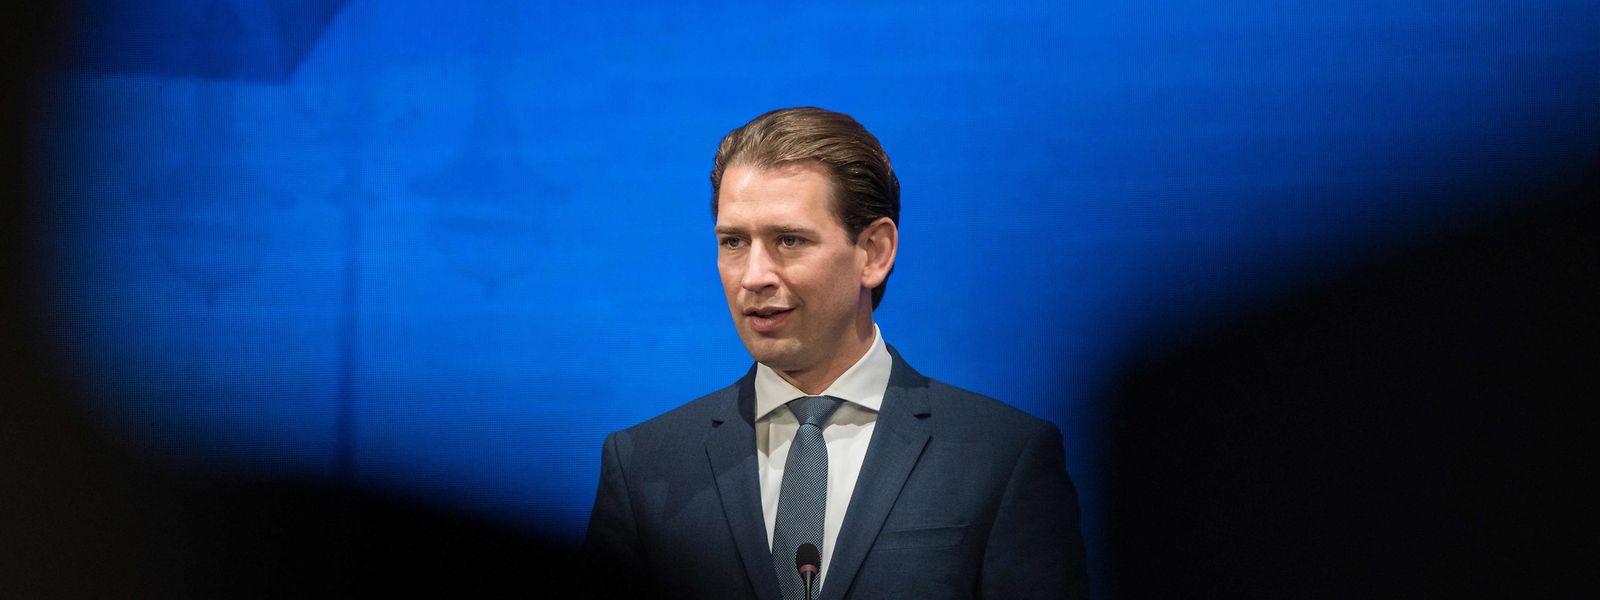 Rücktrittsforderungen, ein mögliches Misstrauensvotum und Spannungen mit dem Koalitionspartner: Der österreichische Kanzler Sebastian Kurz scheint mit dem Rücken zur Wand zu stehen.